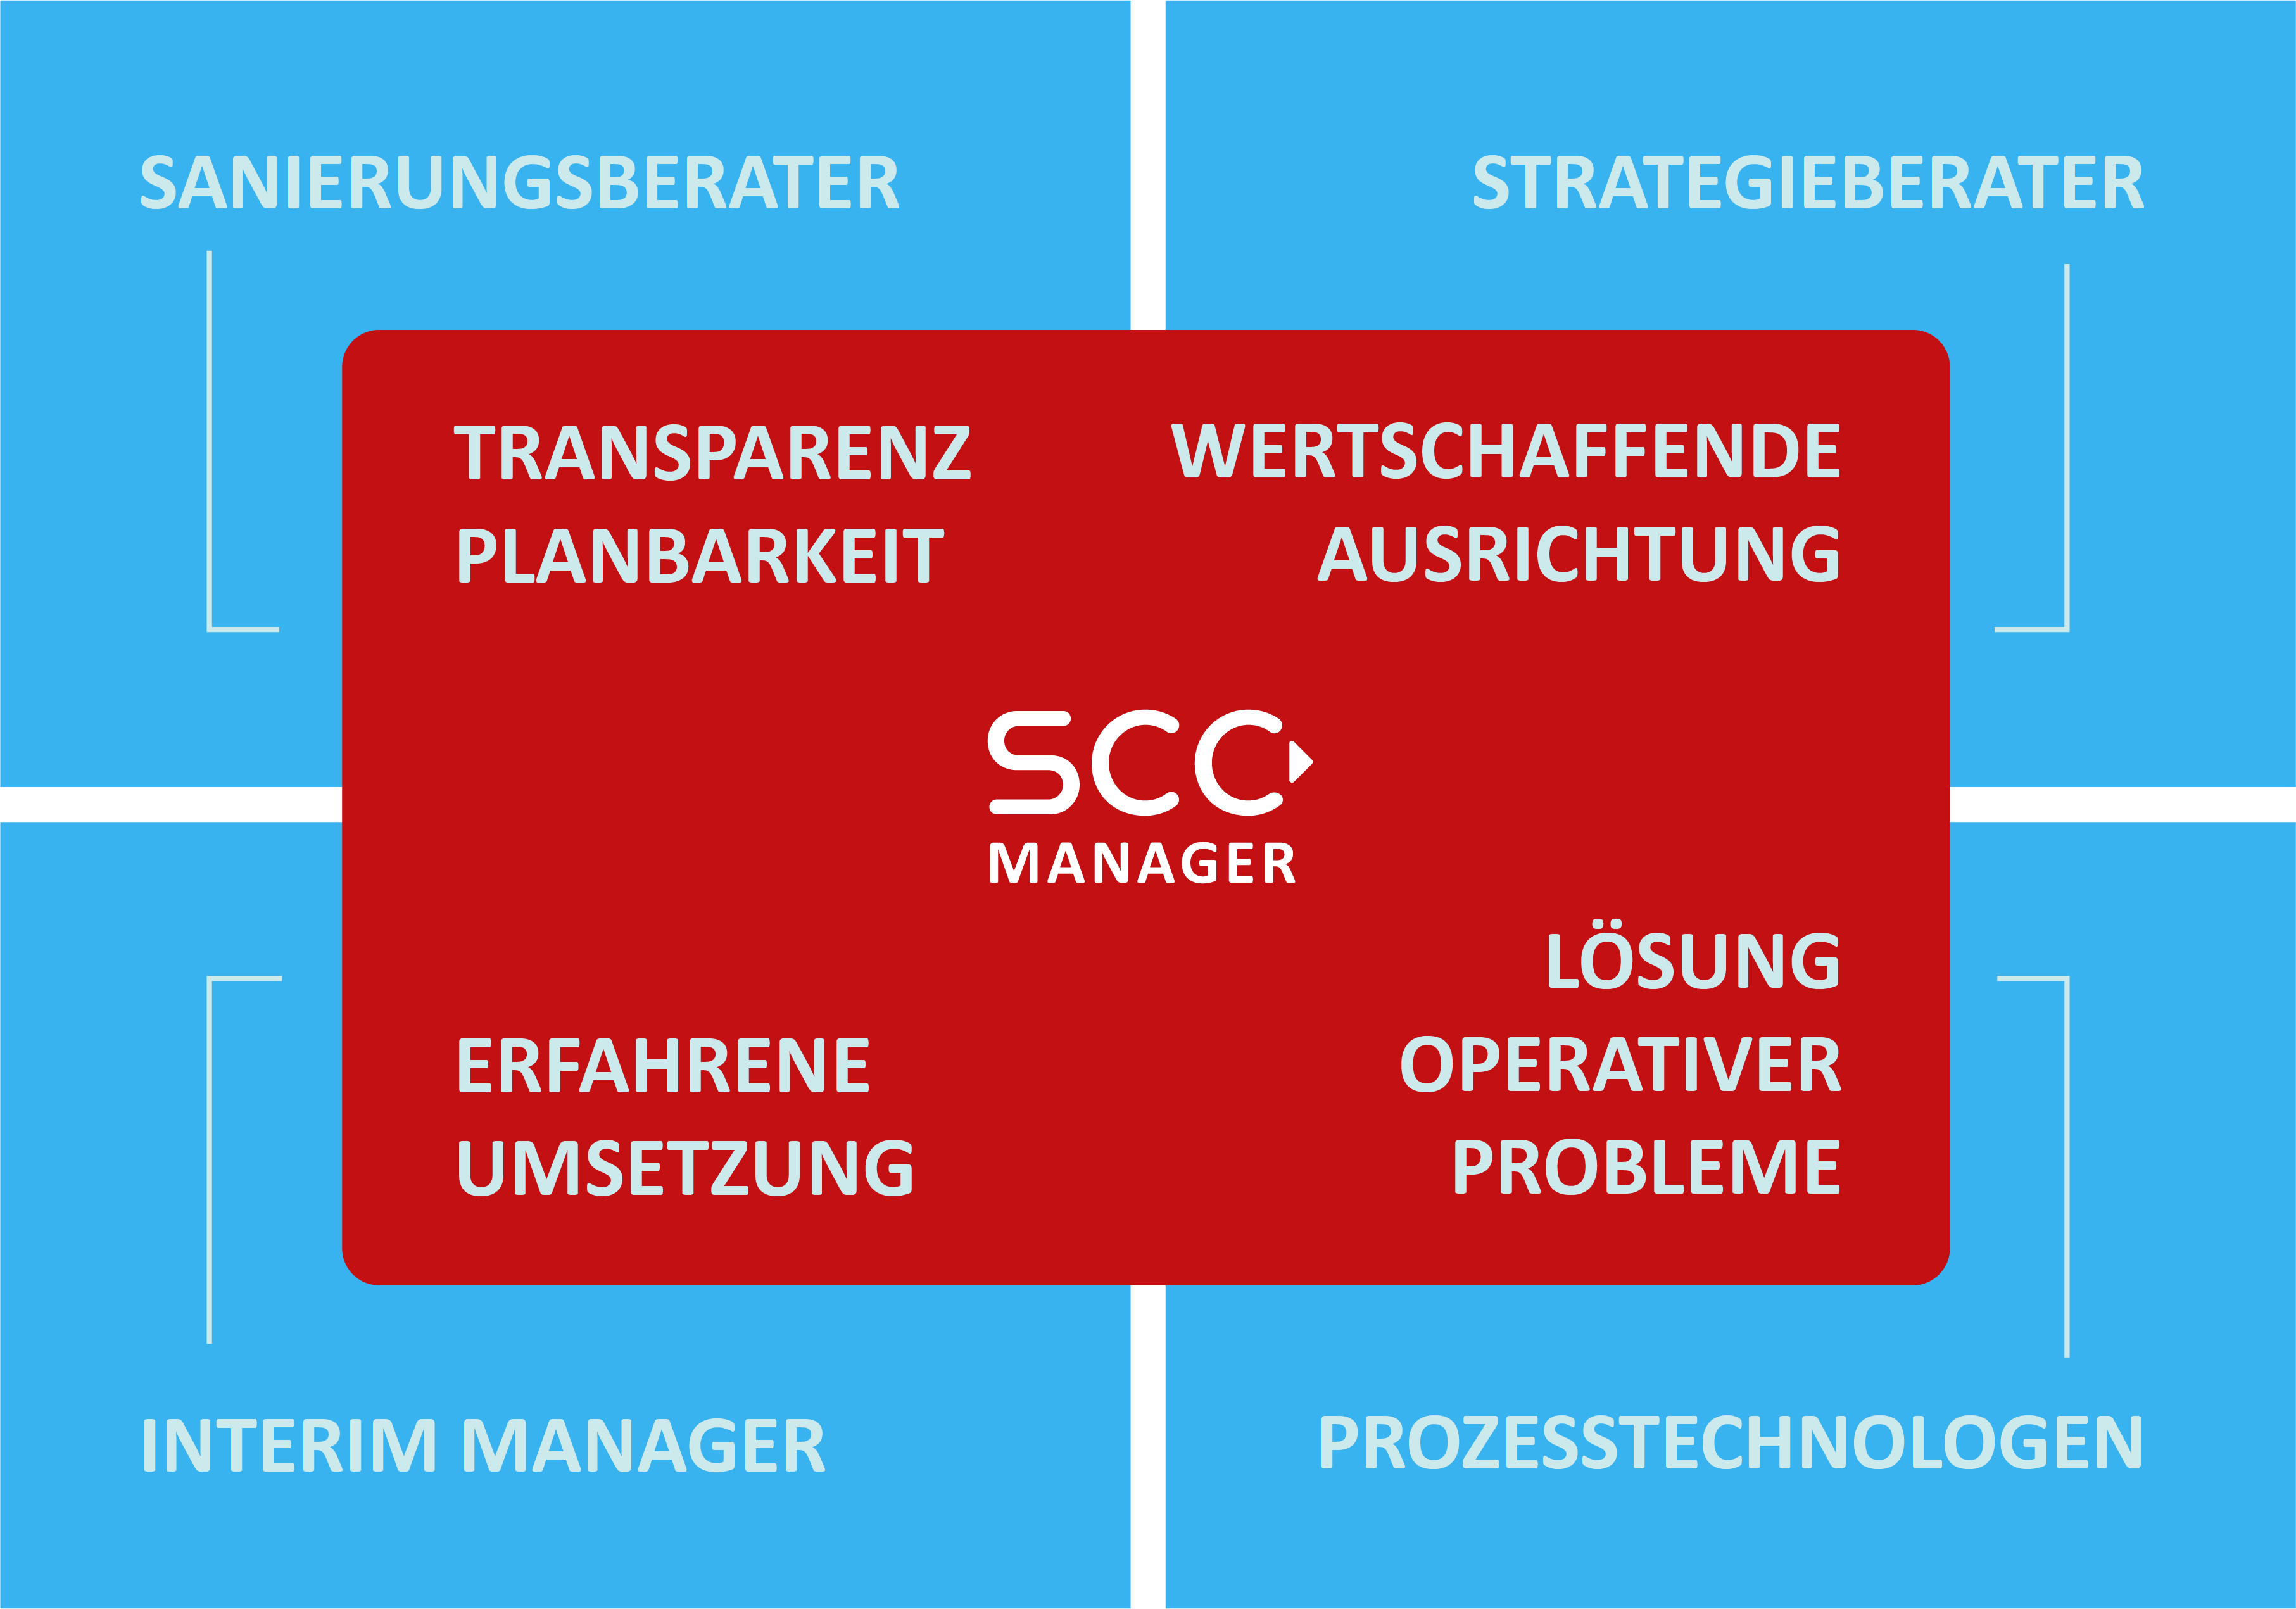 SCC Manager koordiniert Sanierungs- und Strategieberatung mit Interim Managern und Prozesstechnologen